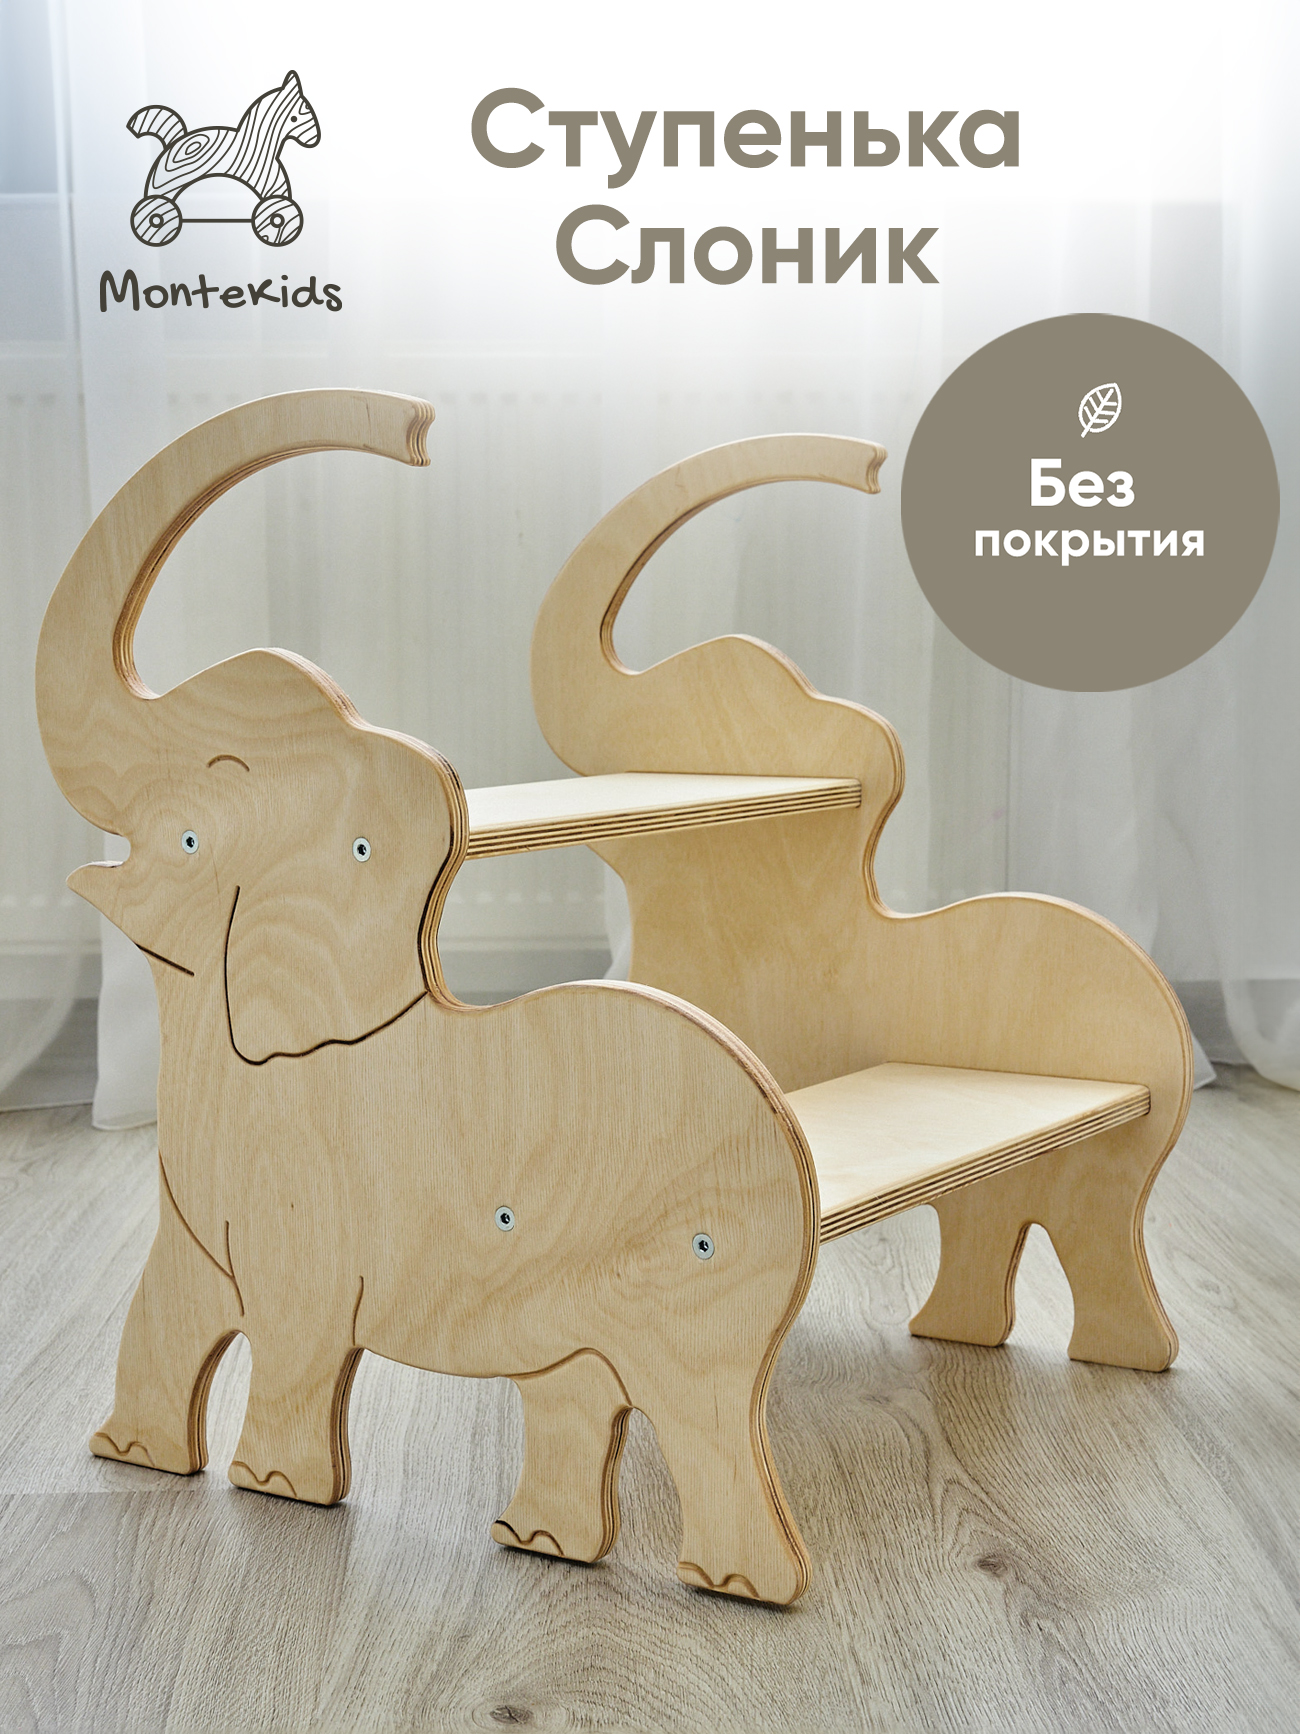 Табурет универсальный Montekids Слон, ступенька, стремянка детская (без покрытия)